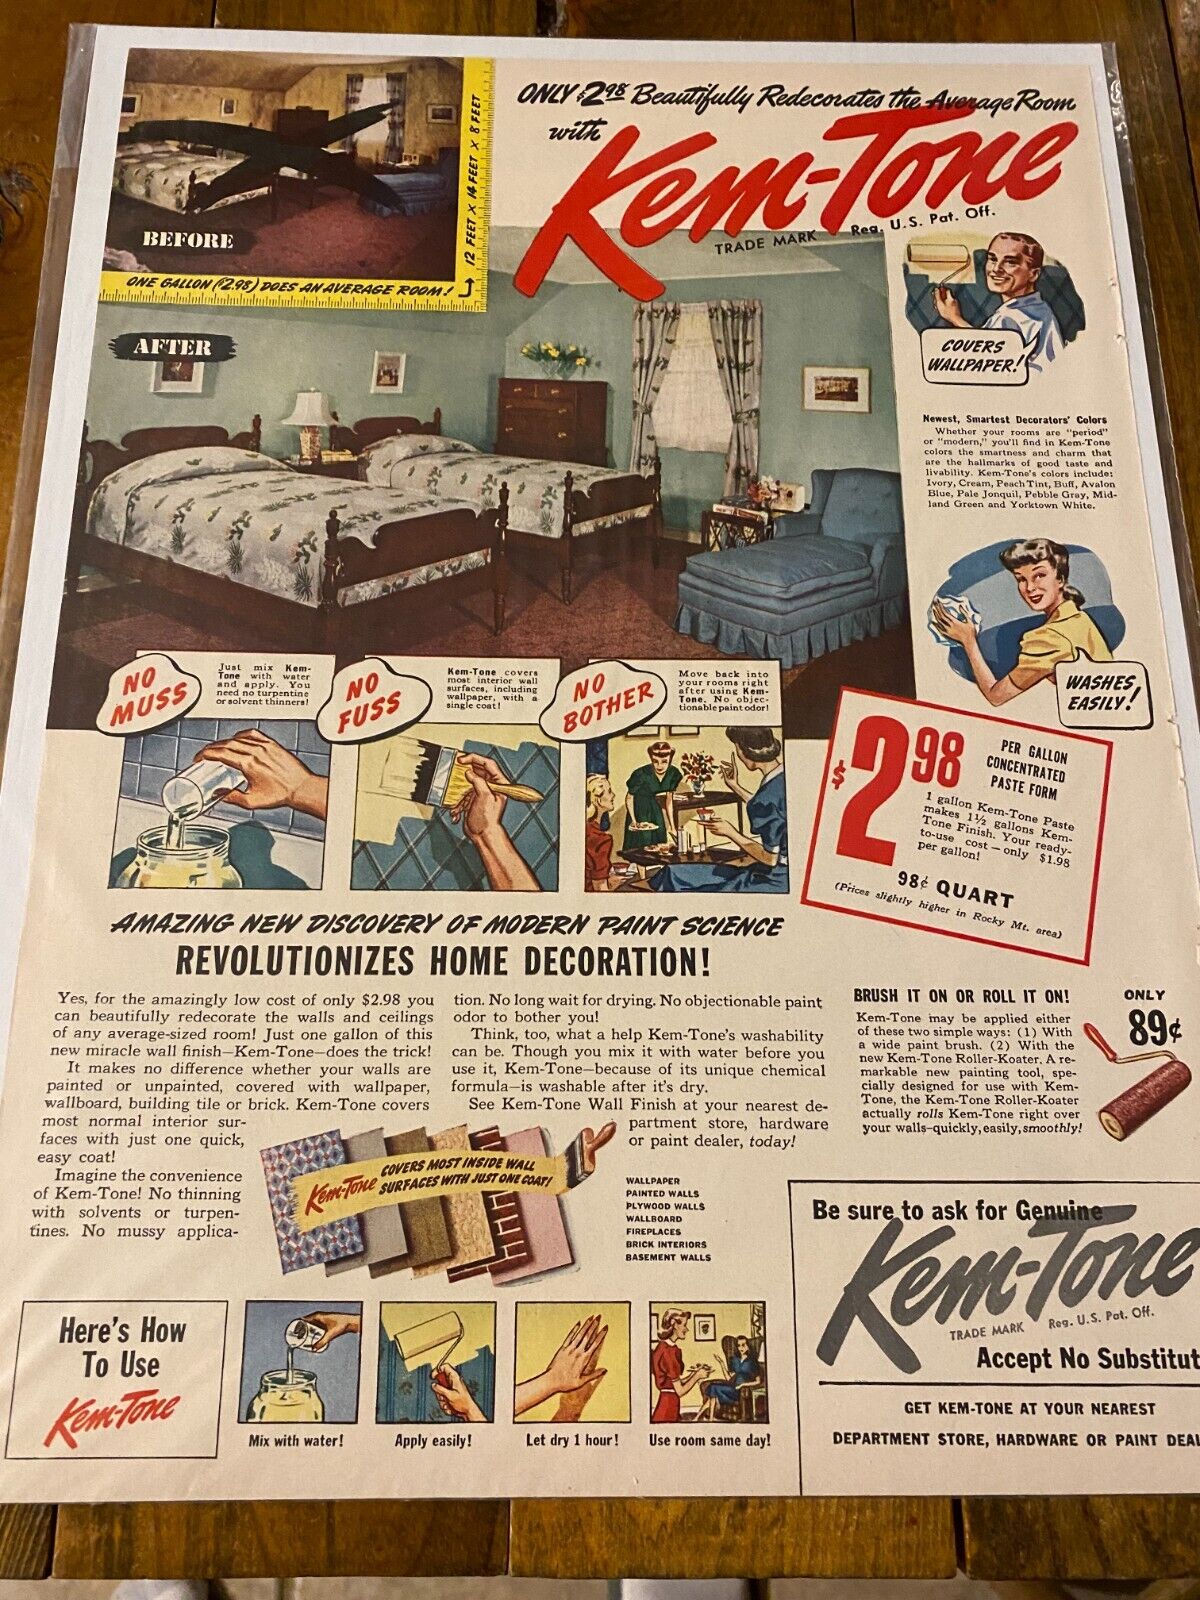 Vintage 1943 Kem-Tone Paint Revolutionizes Home Decoration ad